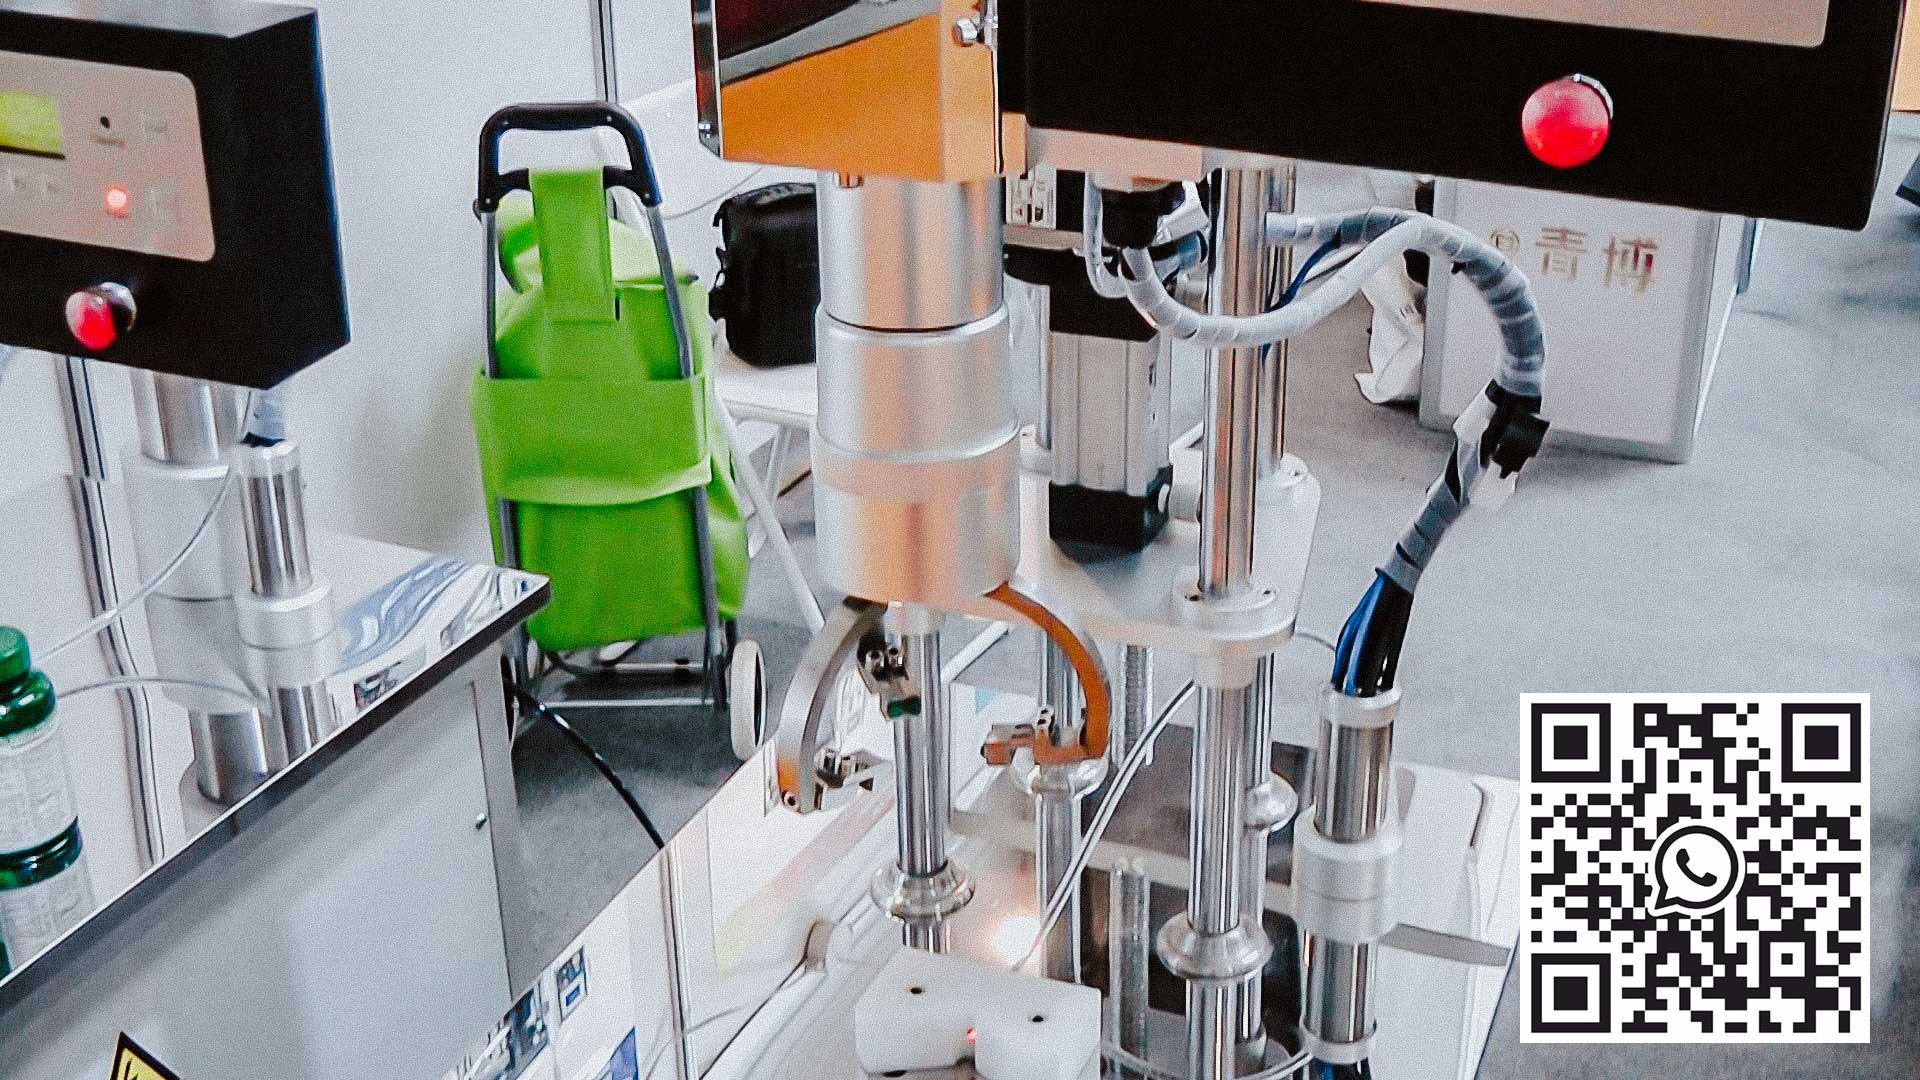 Stolní poloautomatický stroj pro šroubování uzávěrů na plastových lahvích